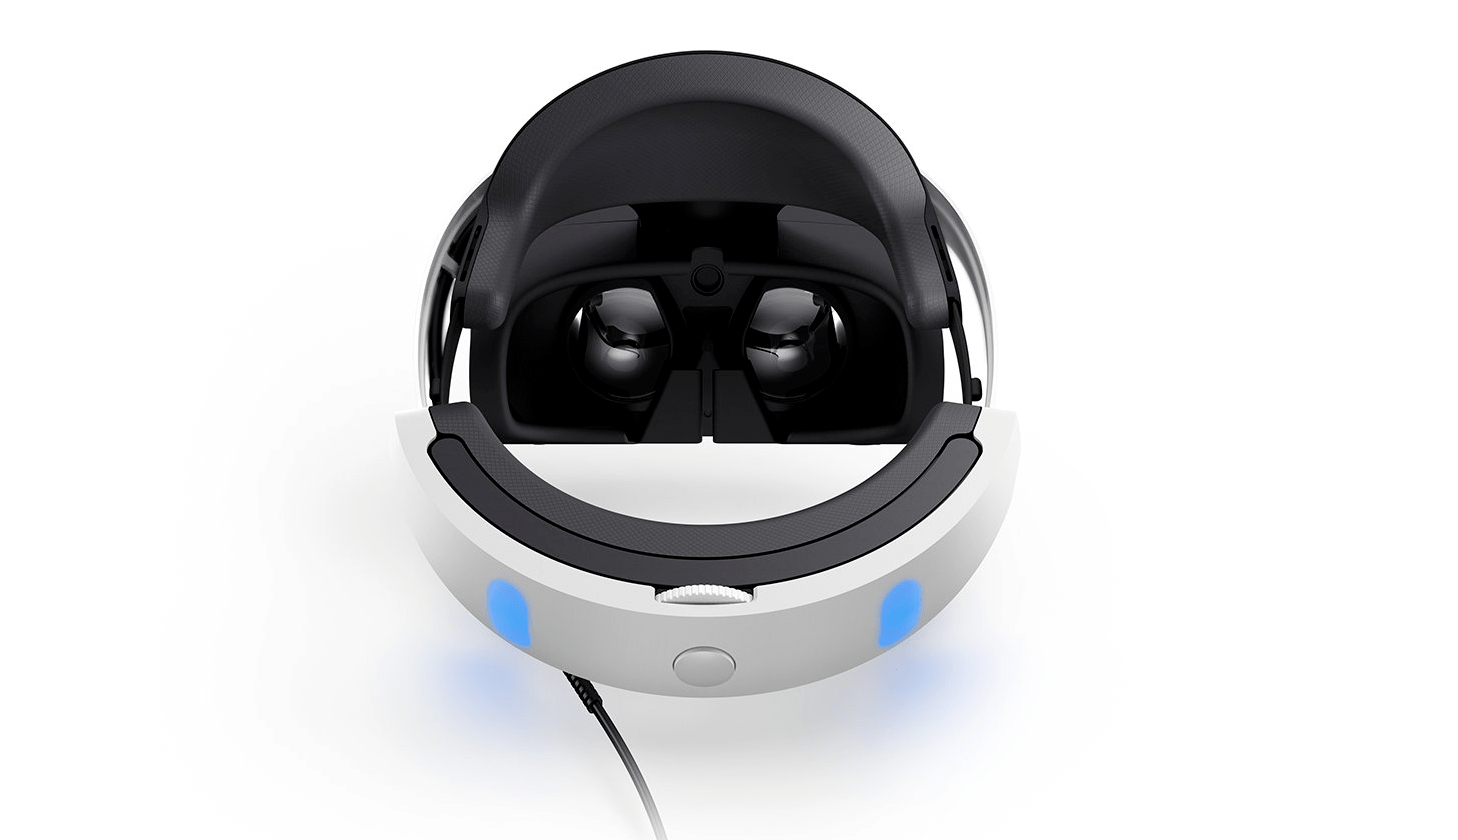 PlayStation VR: The Kotaku Review